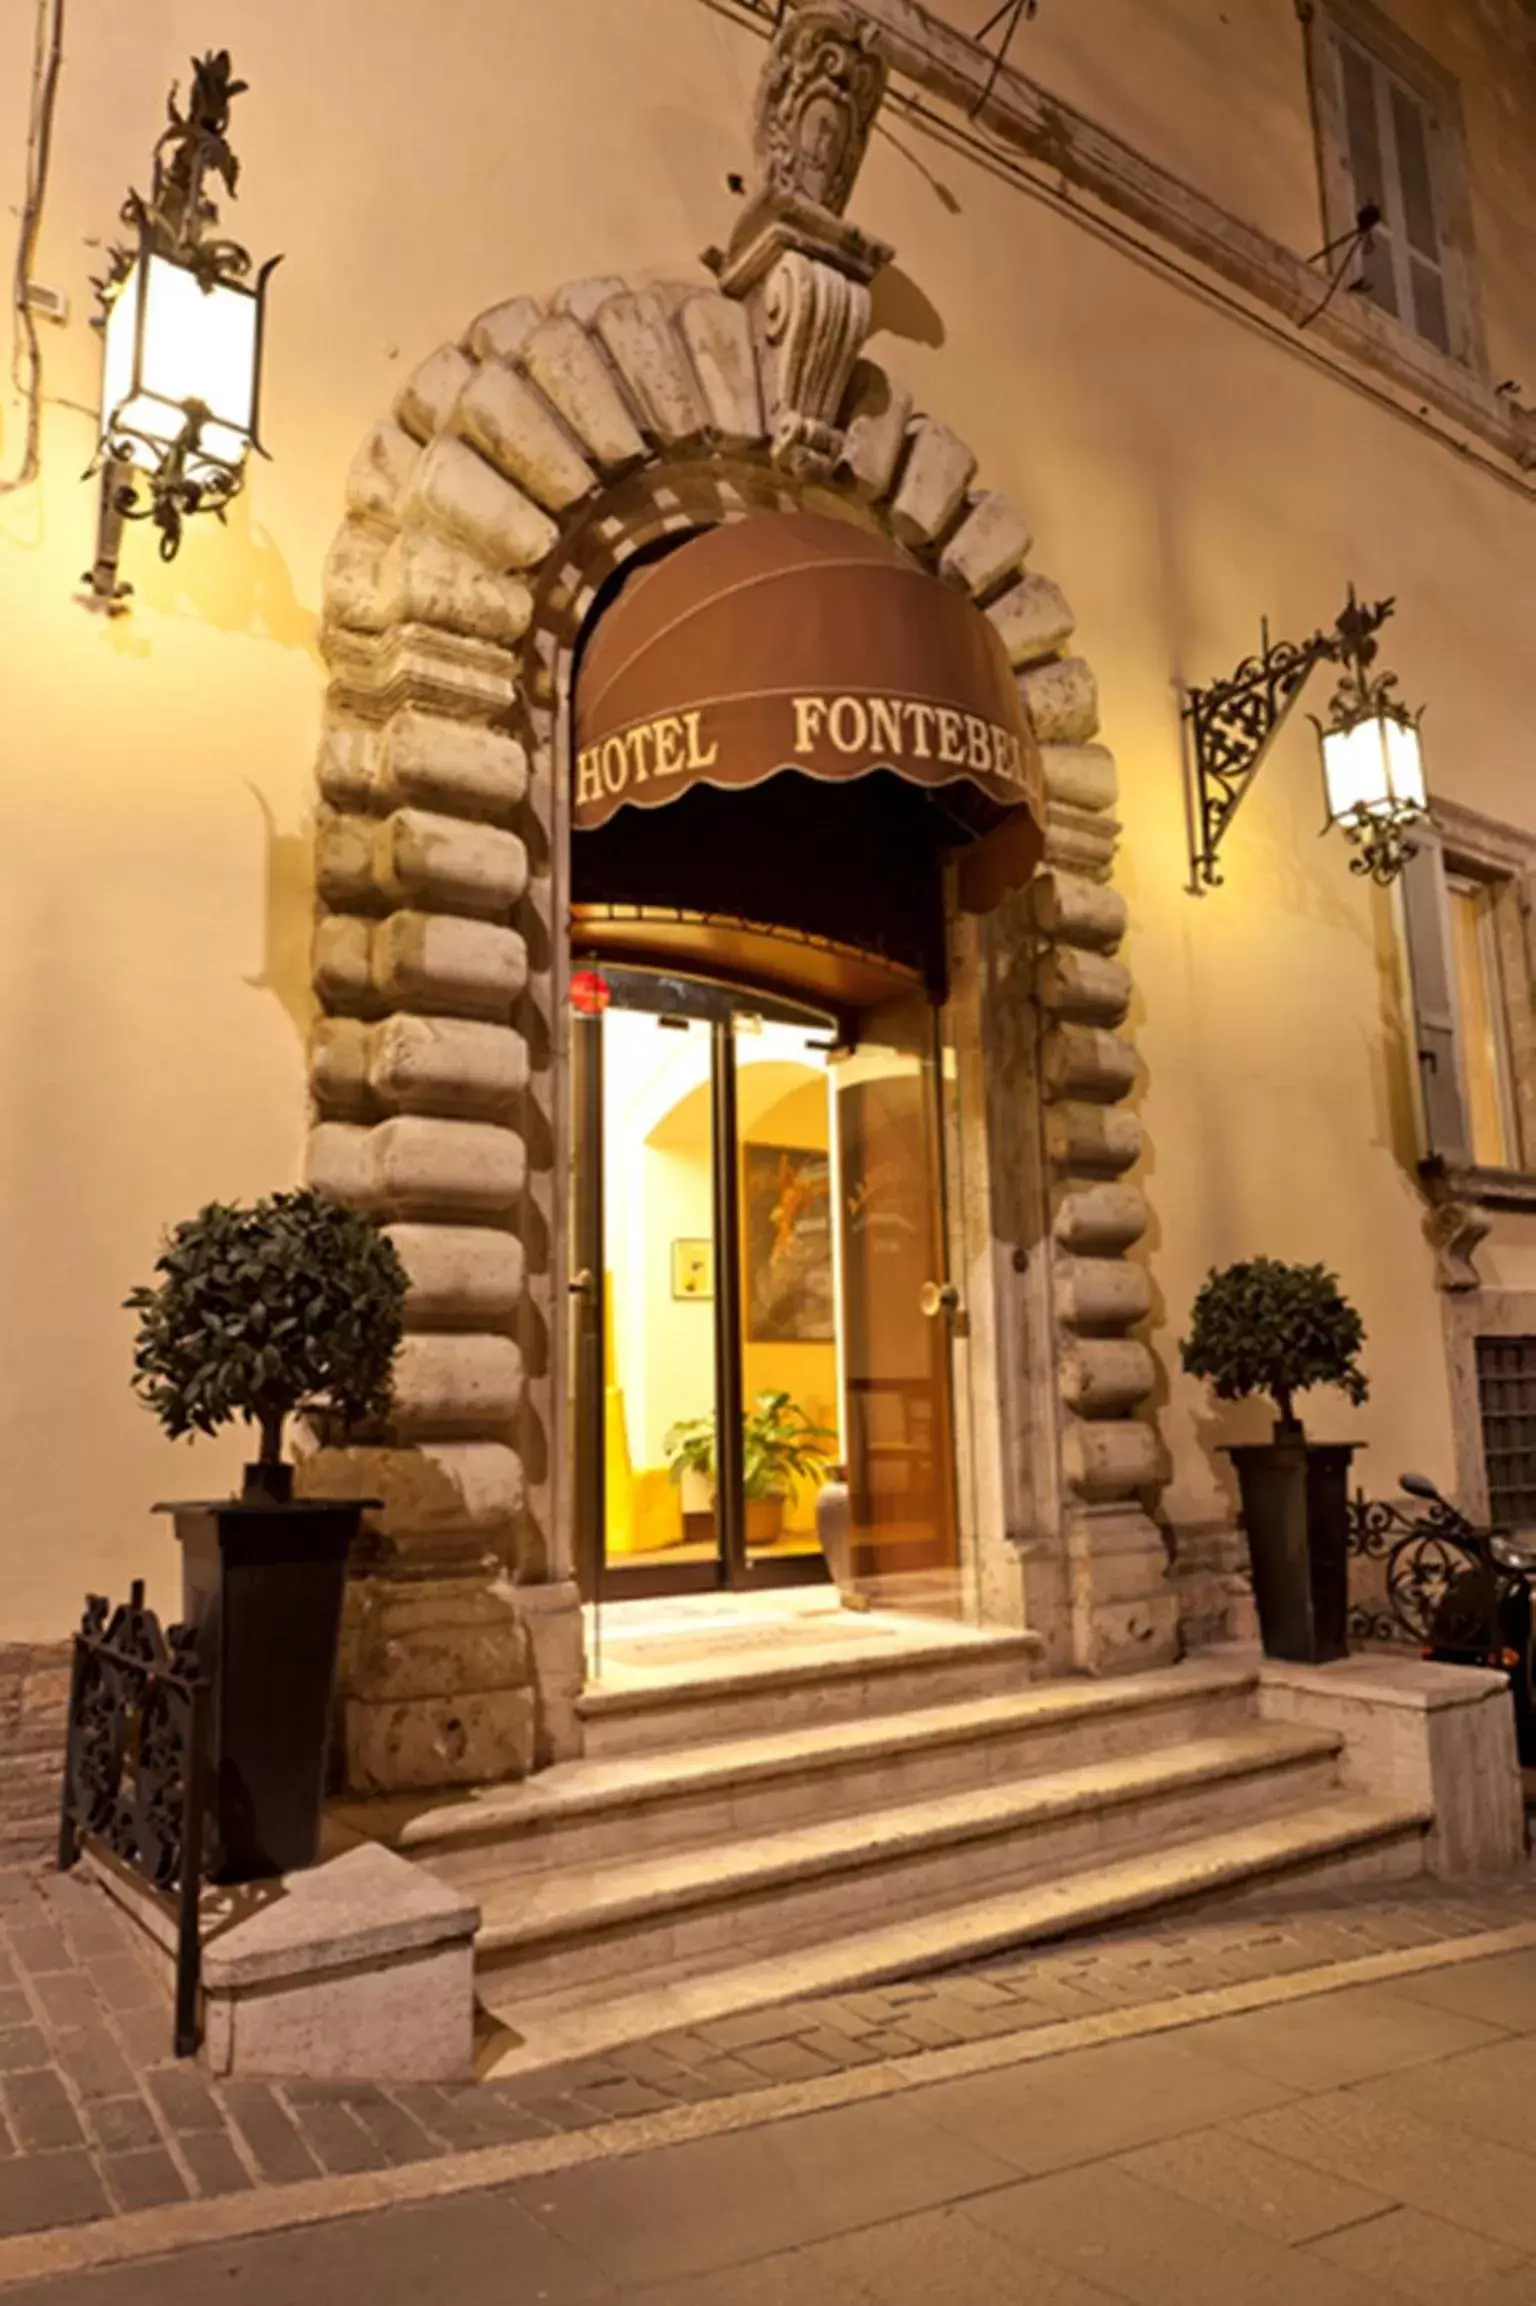 Facade/Entrance in Hotel Fontebella